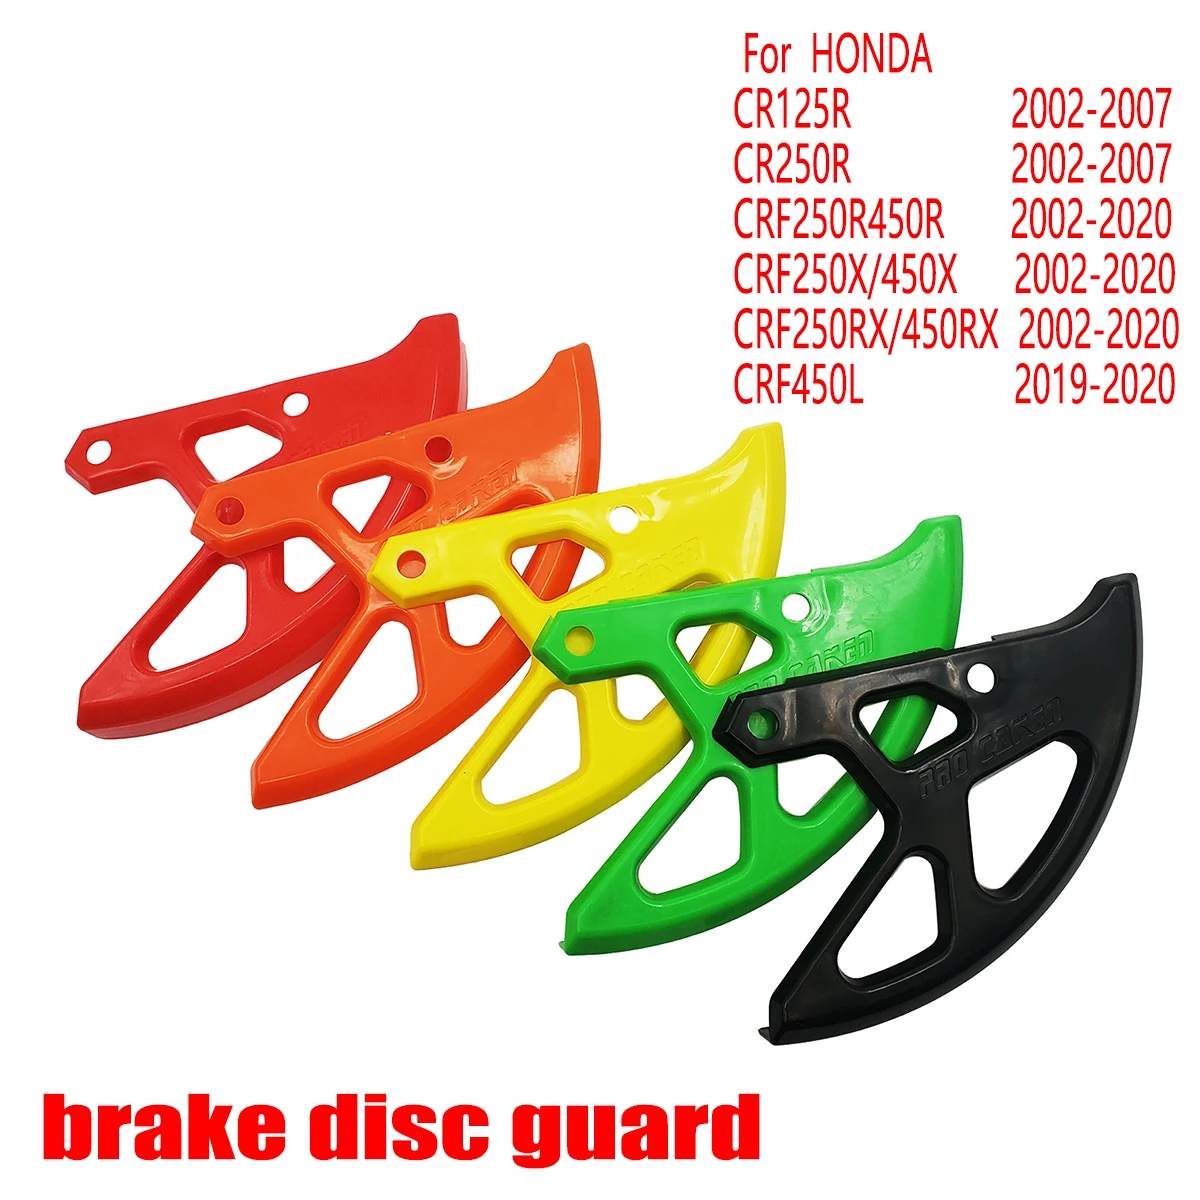 Protector de disco de freno trasero de plástico para motocicleta, para Honda CR 125, CRF 250, 450, R X RX, CRF250R, CRF250X, CRF450R, CRF450X, CRF450RX, 2002-2020